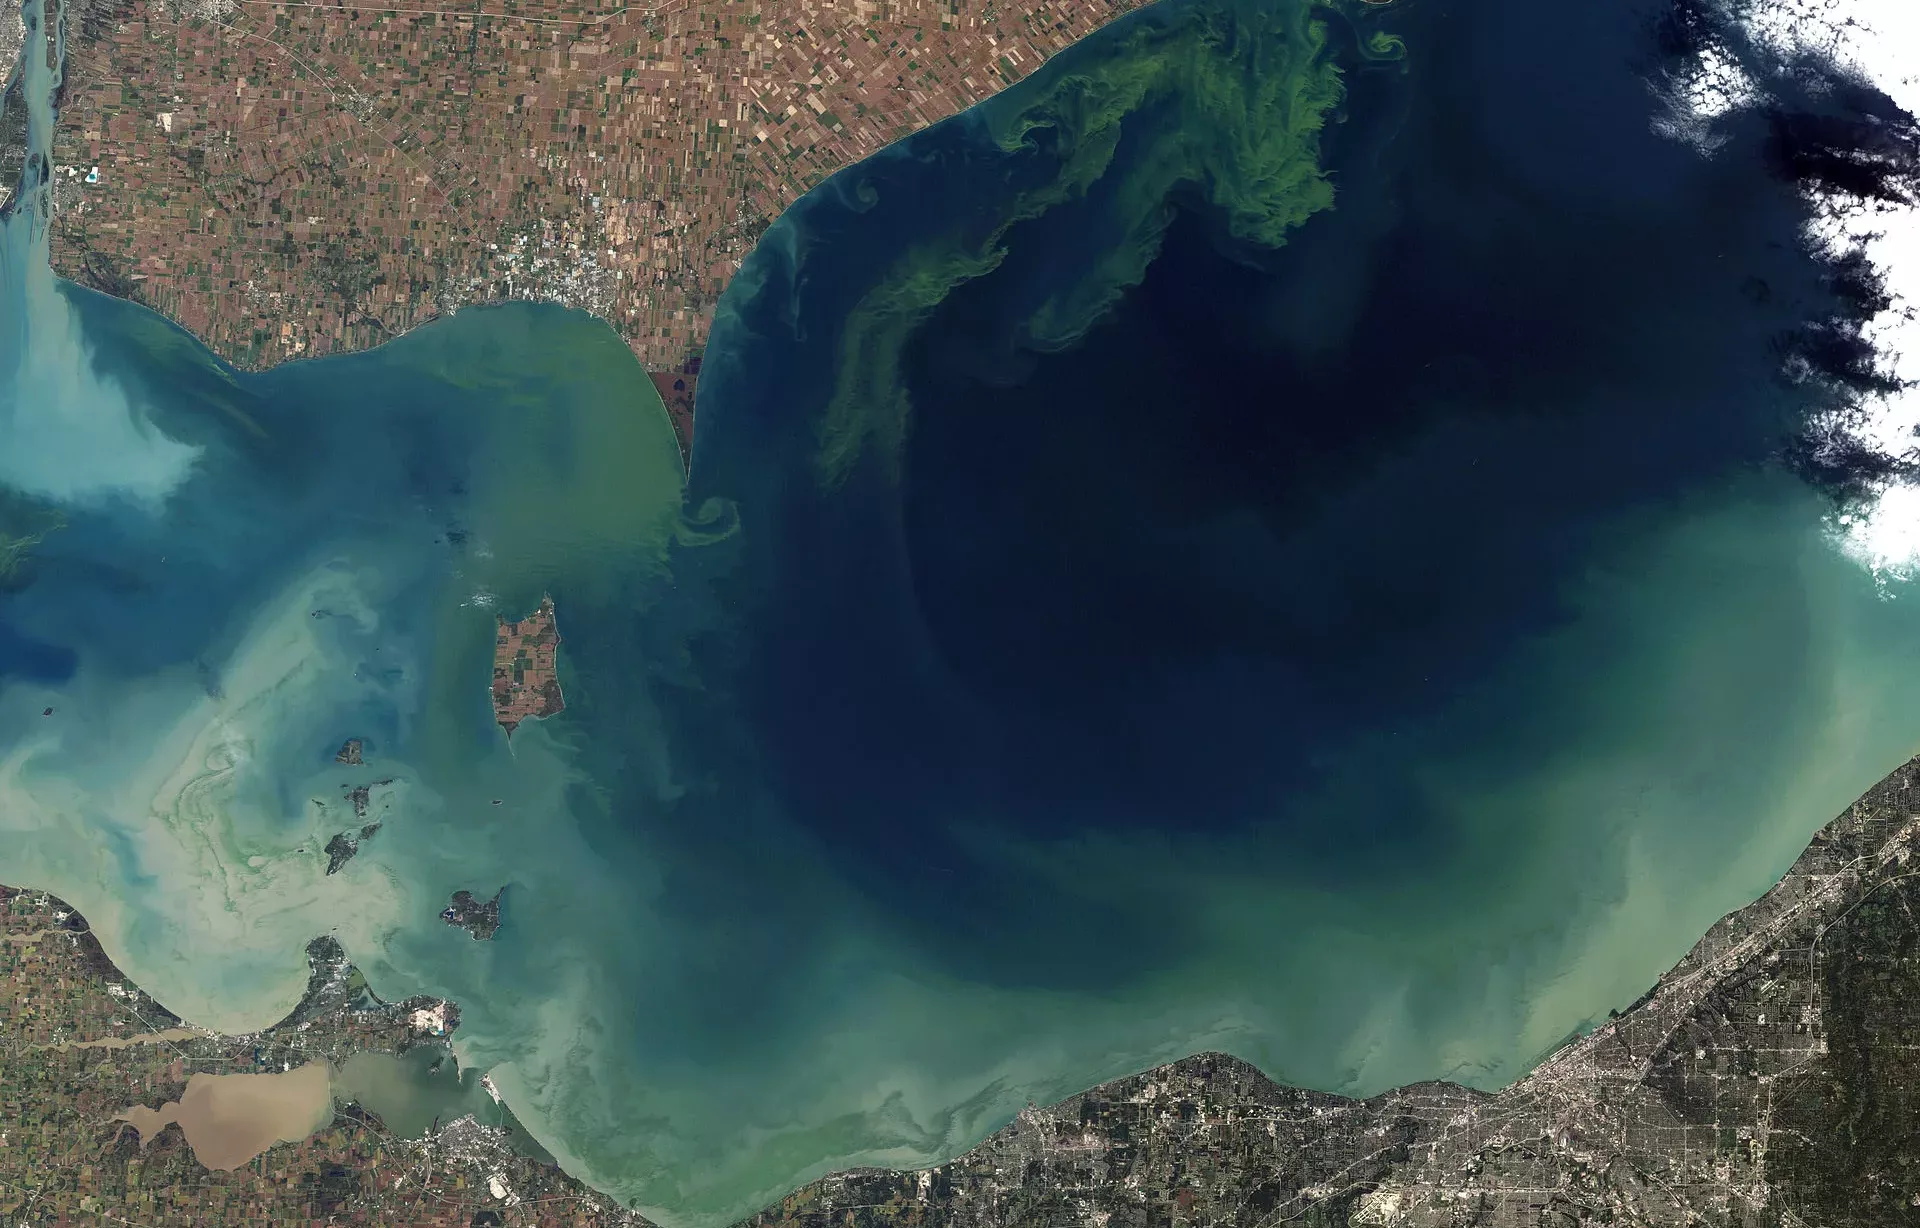 phosphate causing algae bloom